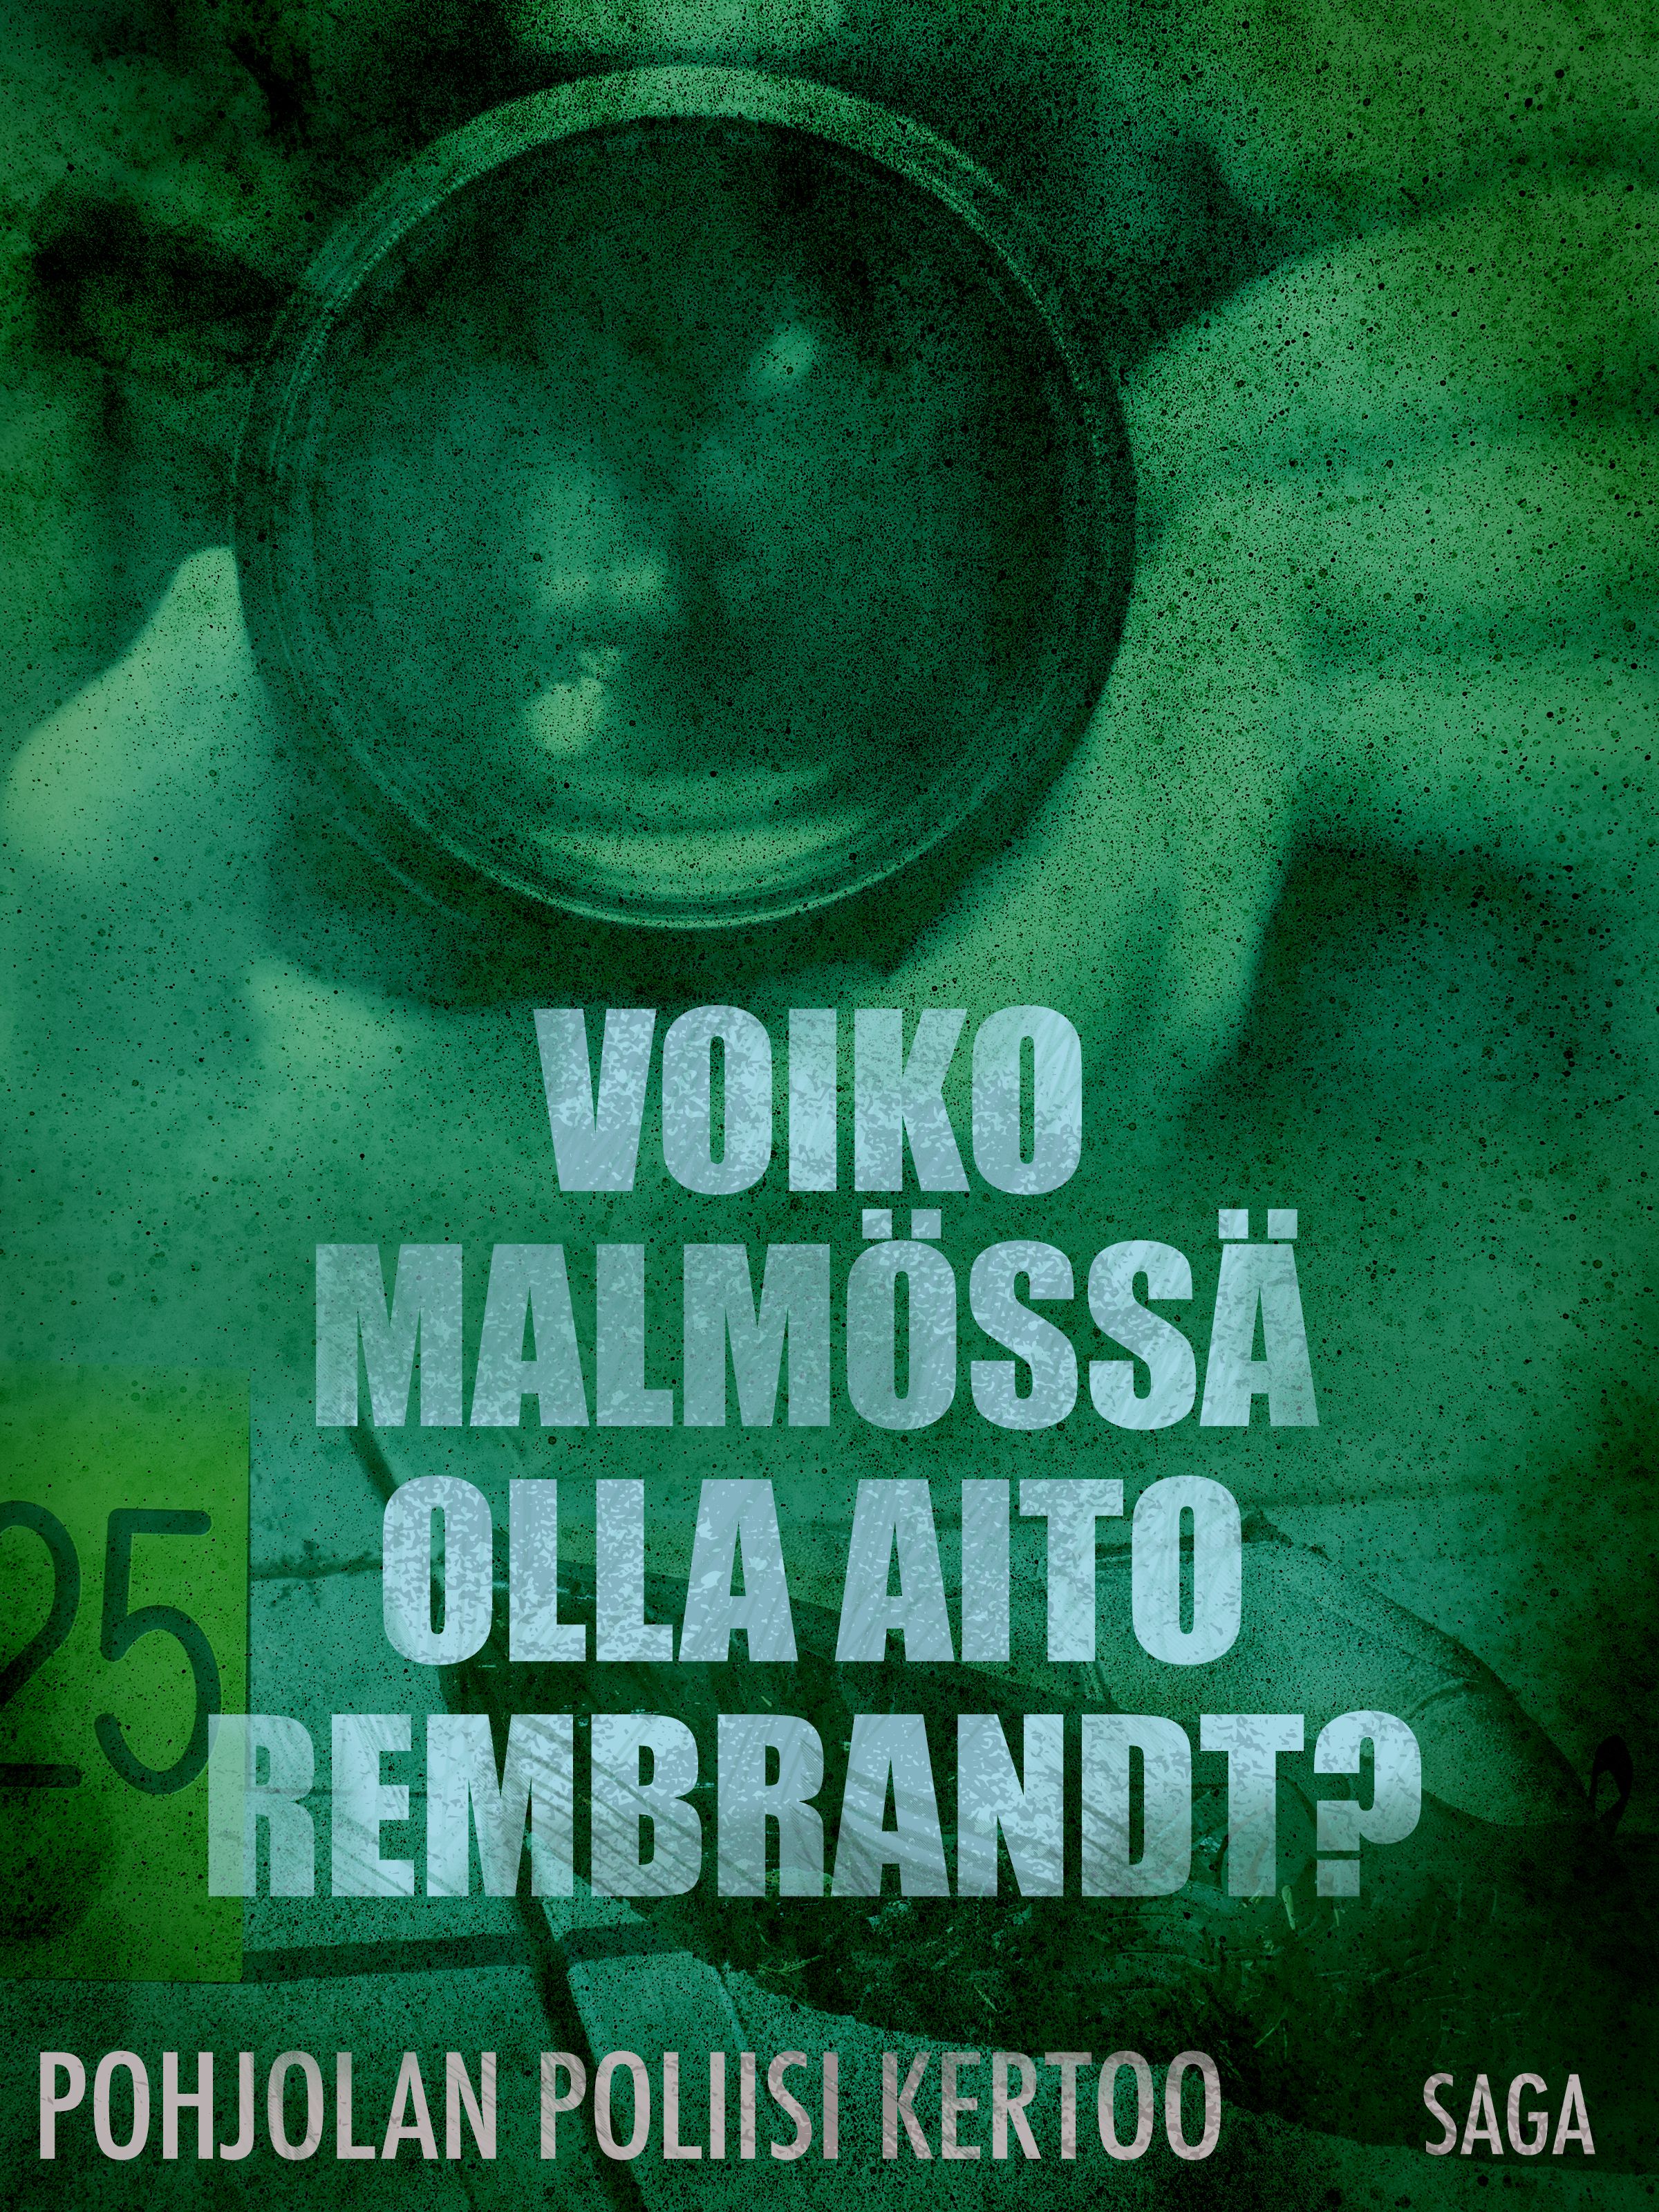 Voiko Malmössä olla aito Rembrandt?, e-bog af Eri Tekijöitä